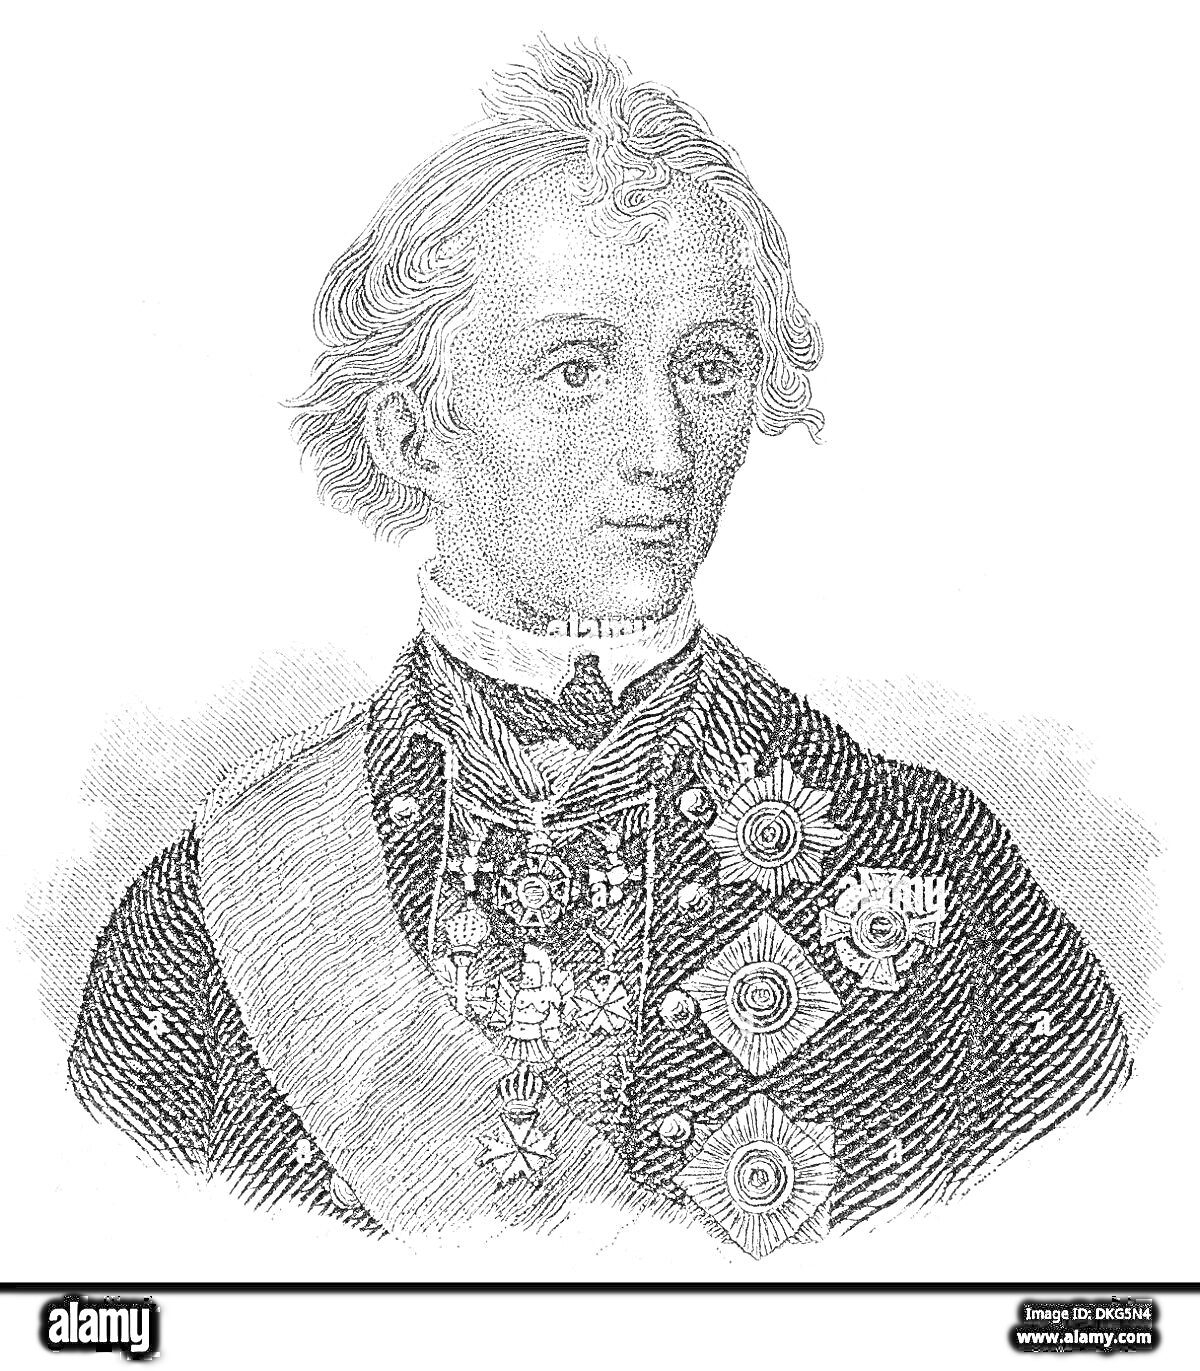 Раскраска Портрет человека в военной форме с орденами и медалями